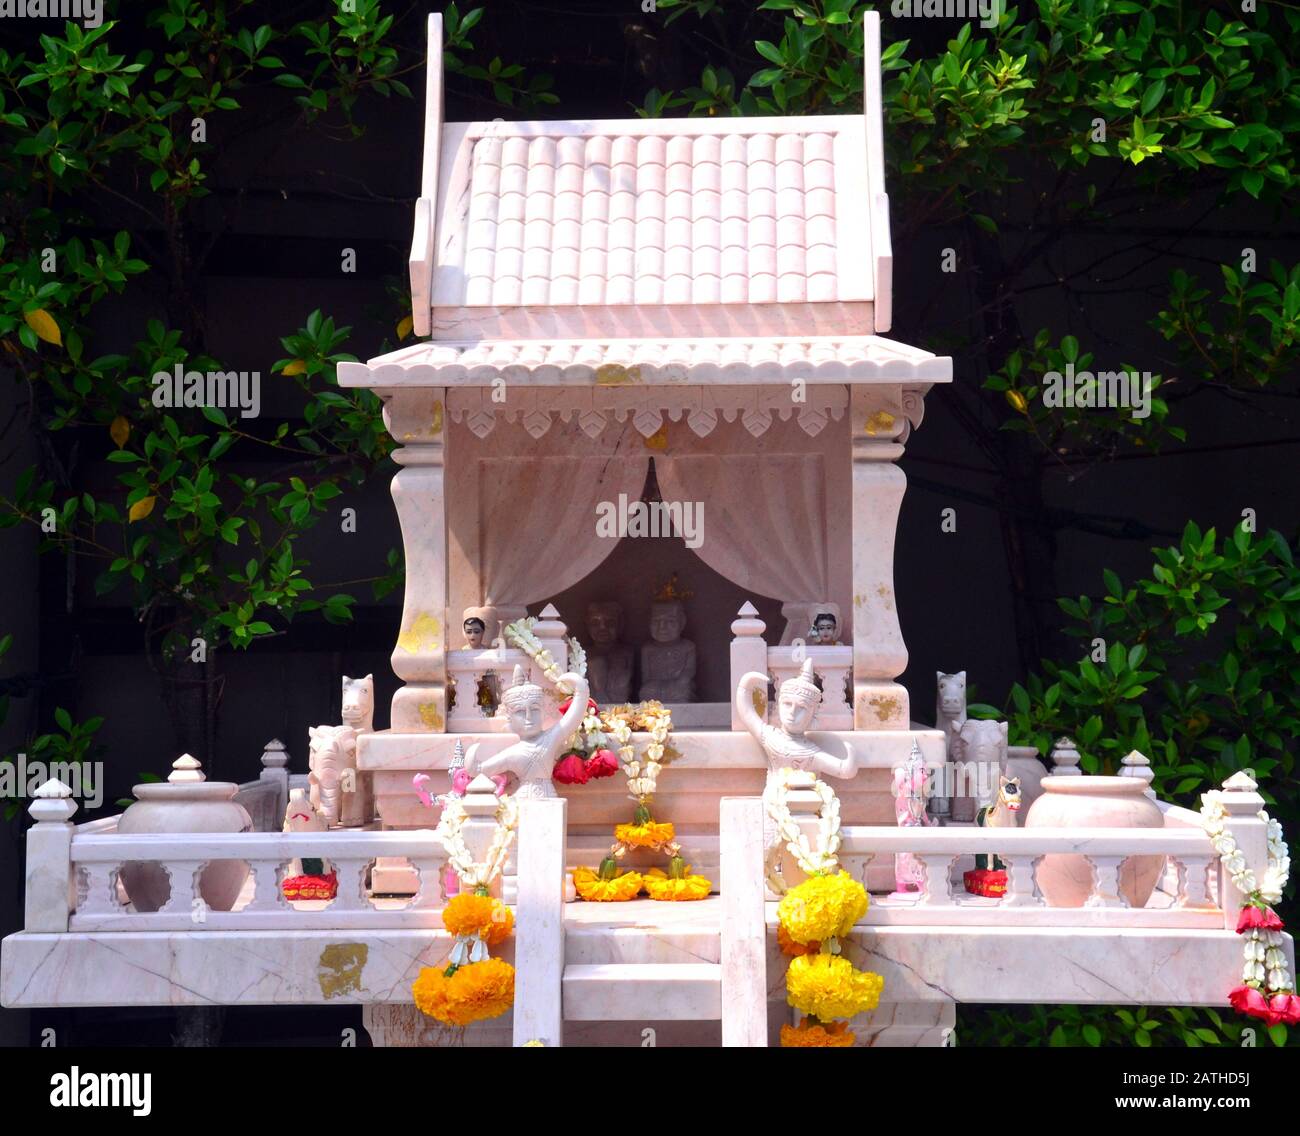 Des offres sur une maison d'esprit ou un sanctuaire typiquement thaïlandais à l'extérieur d'un hôtel de Bangkok, Thaïlande, Asie Banque D'Images